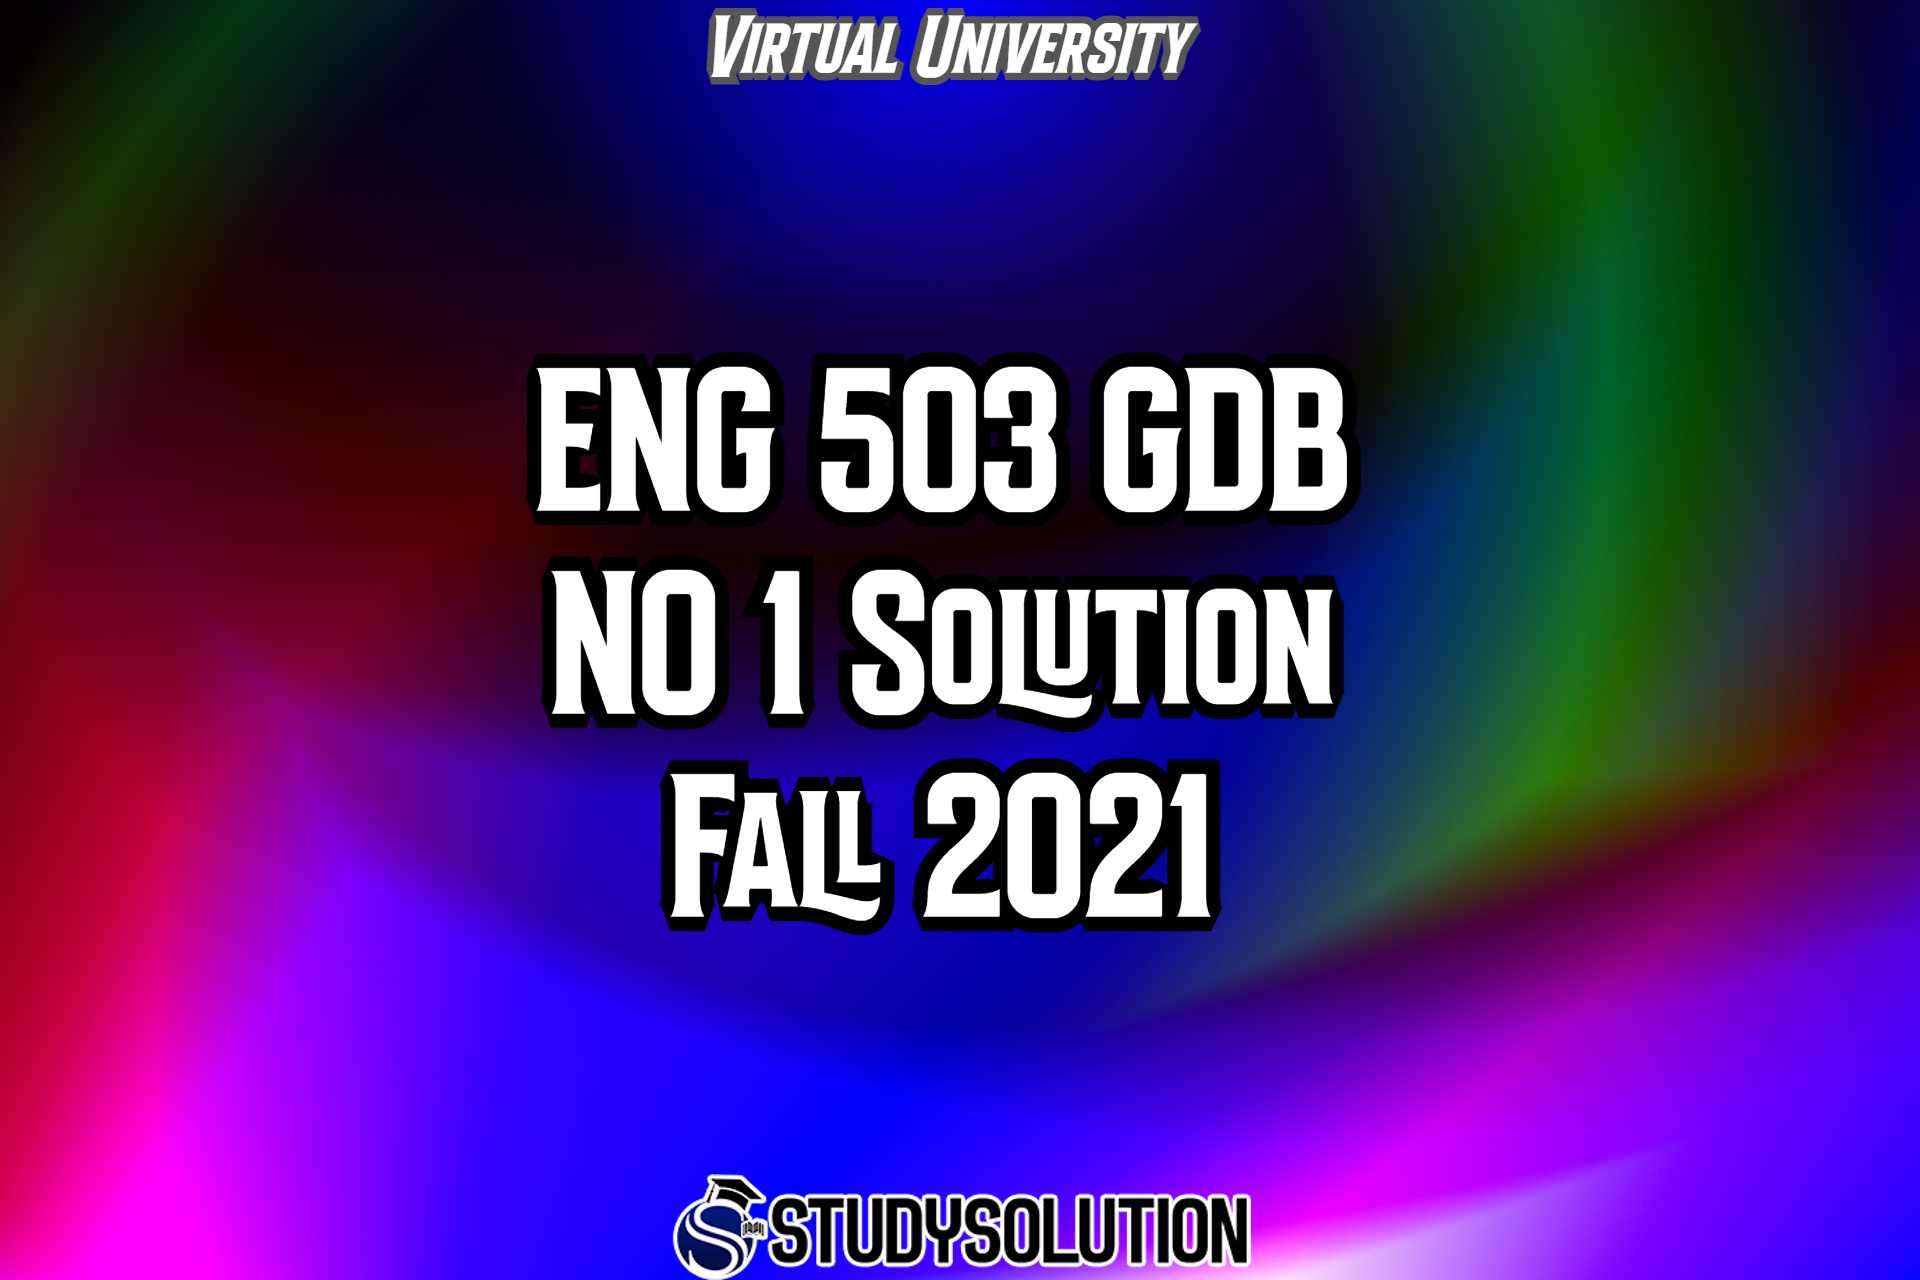 ENG503 GDB No 1 Solution Fall 2021